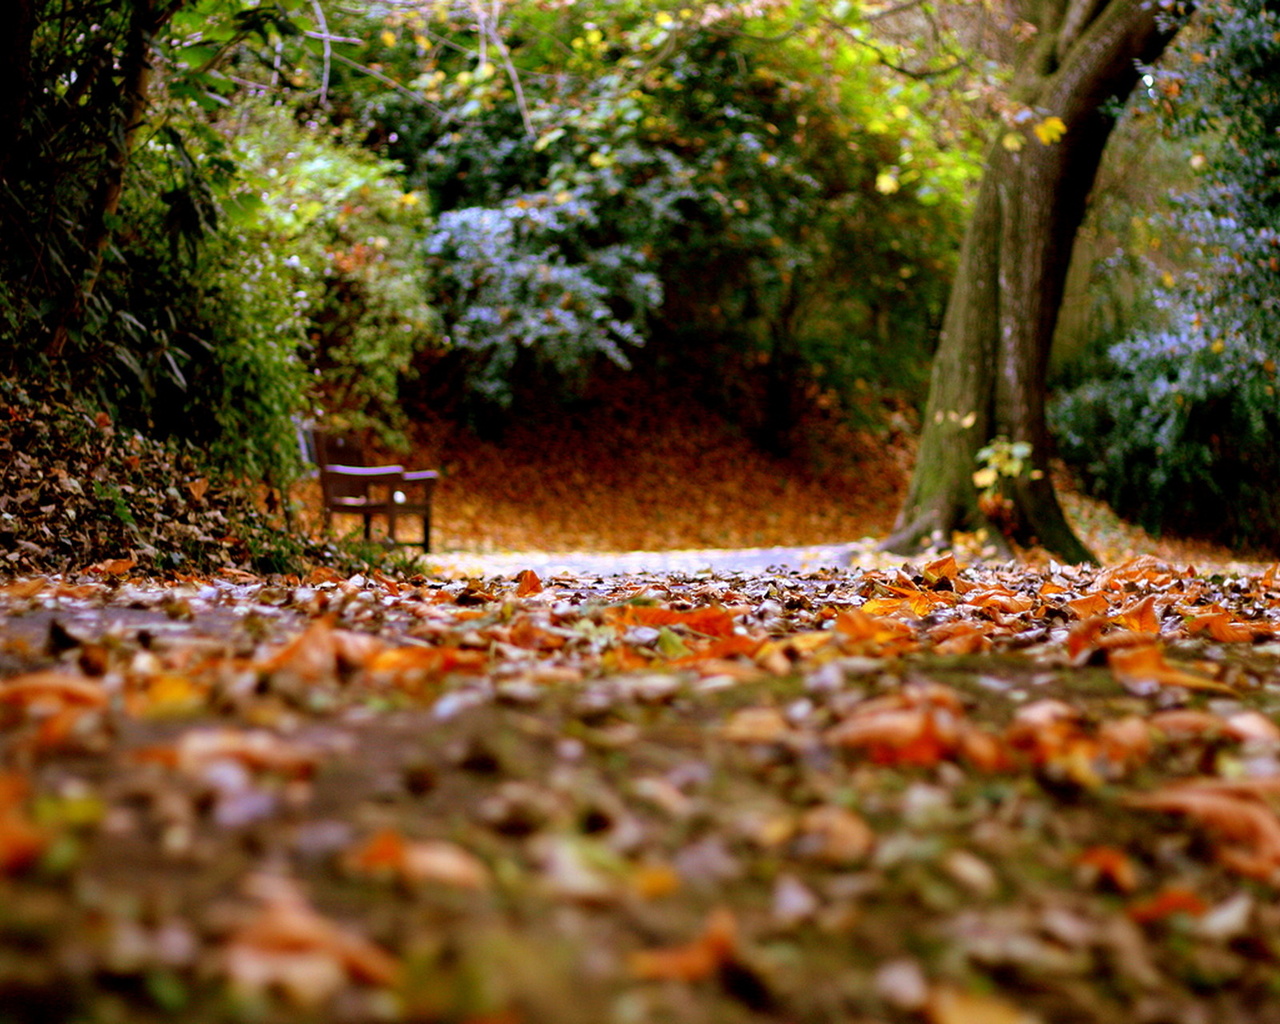 Осенняя дорожка в парке